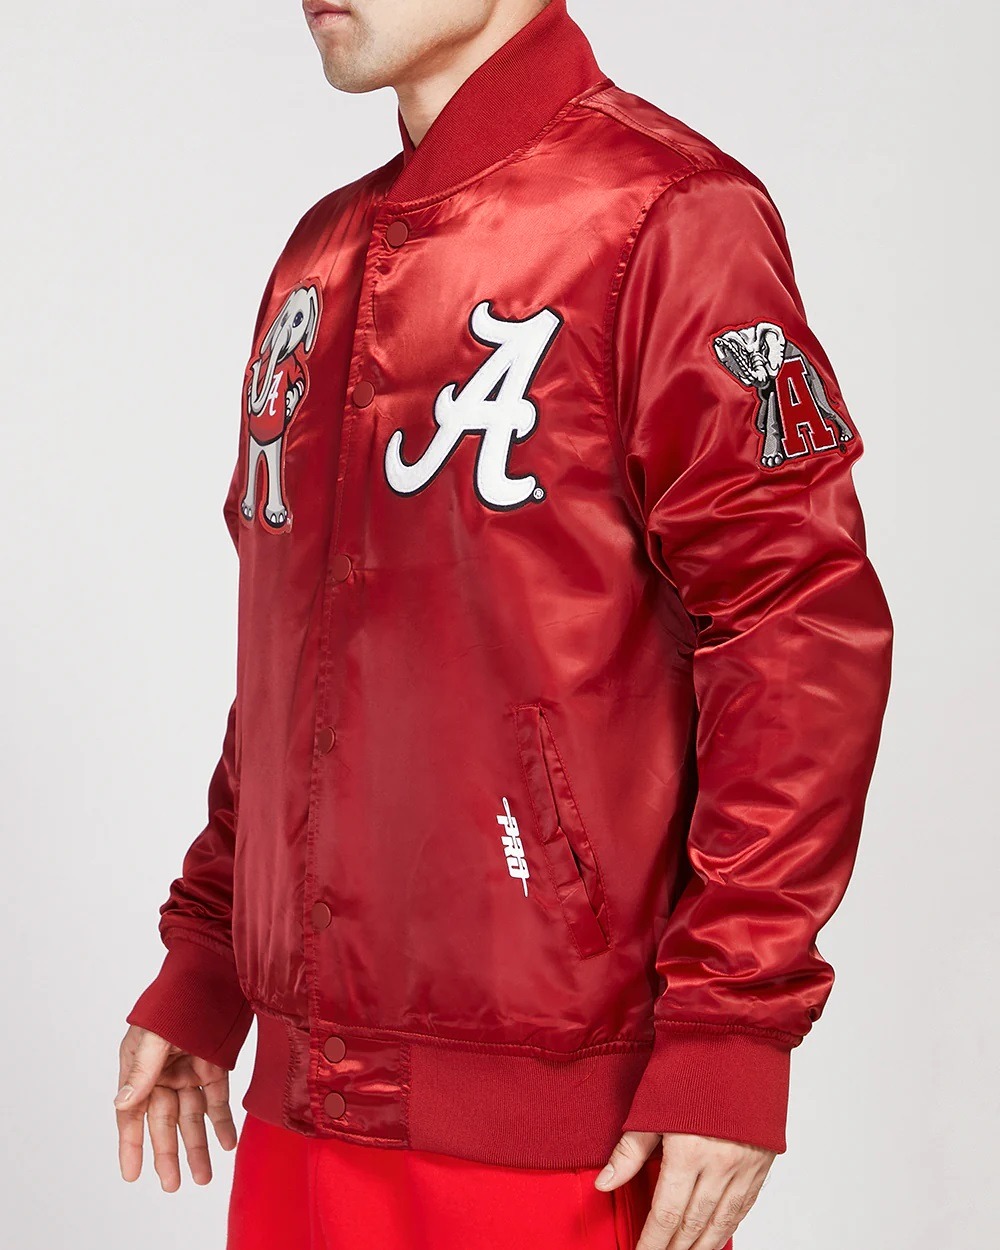 University Of Alabama Classic Red Satin Jacket